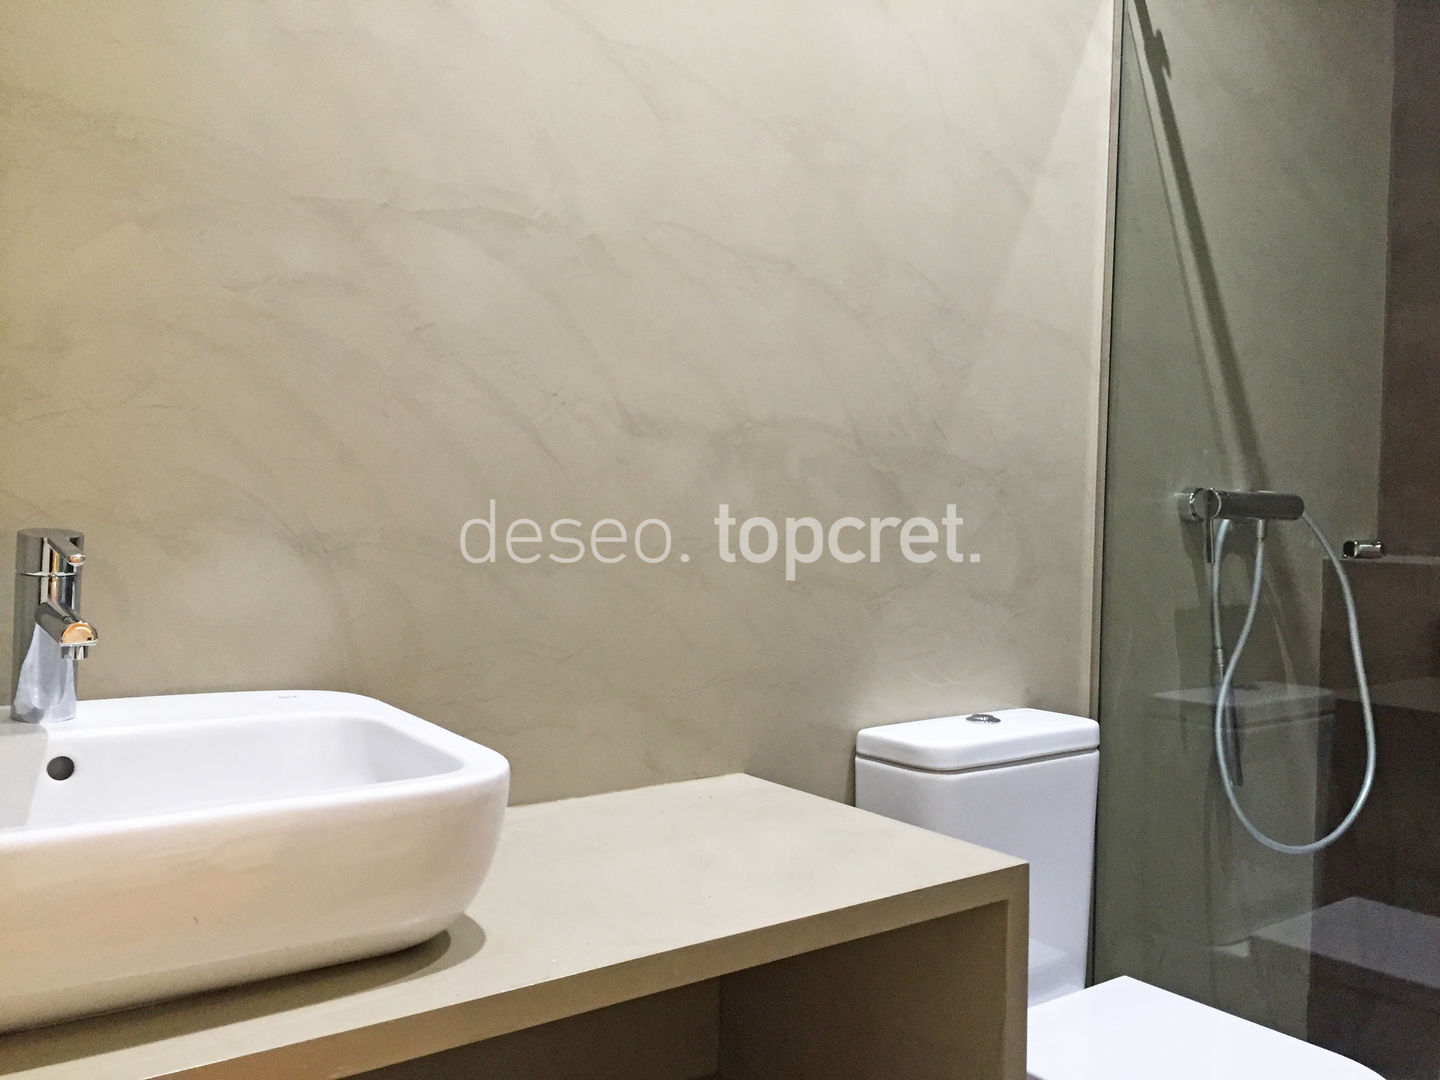 BAÑOS en Microcemento®, Topcret Topcret Bathroom